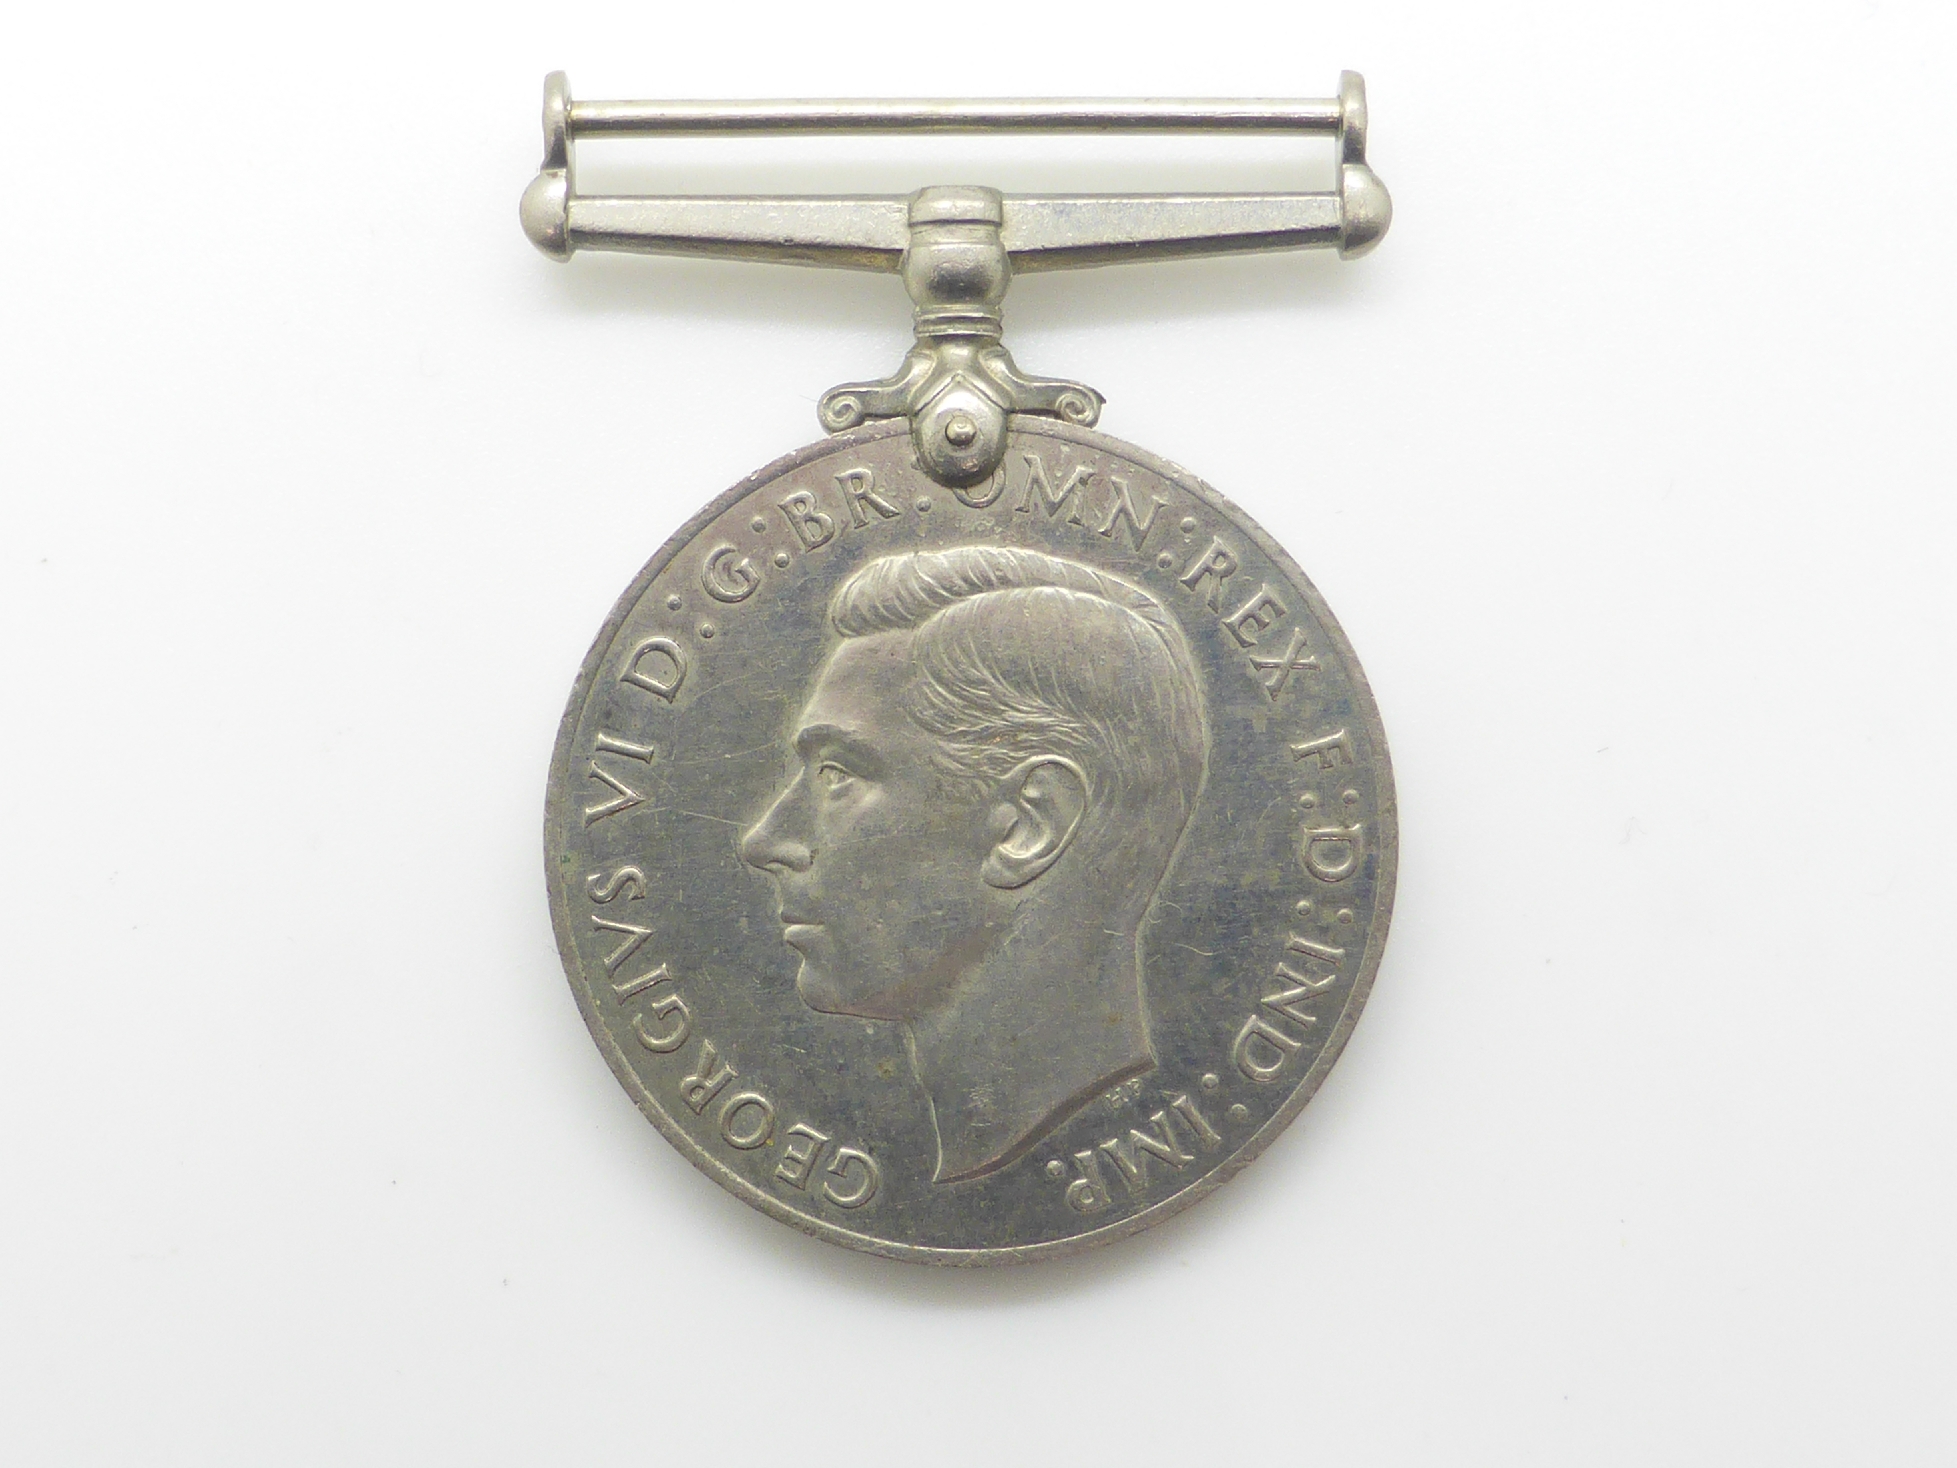 Elizabeth II Imperial Service Medal named to Mrs Jean Margaret Rose together with a WWII War Medal - Image 25 of 47